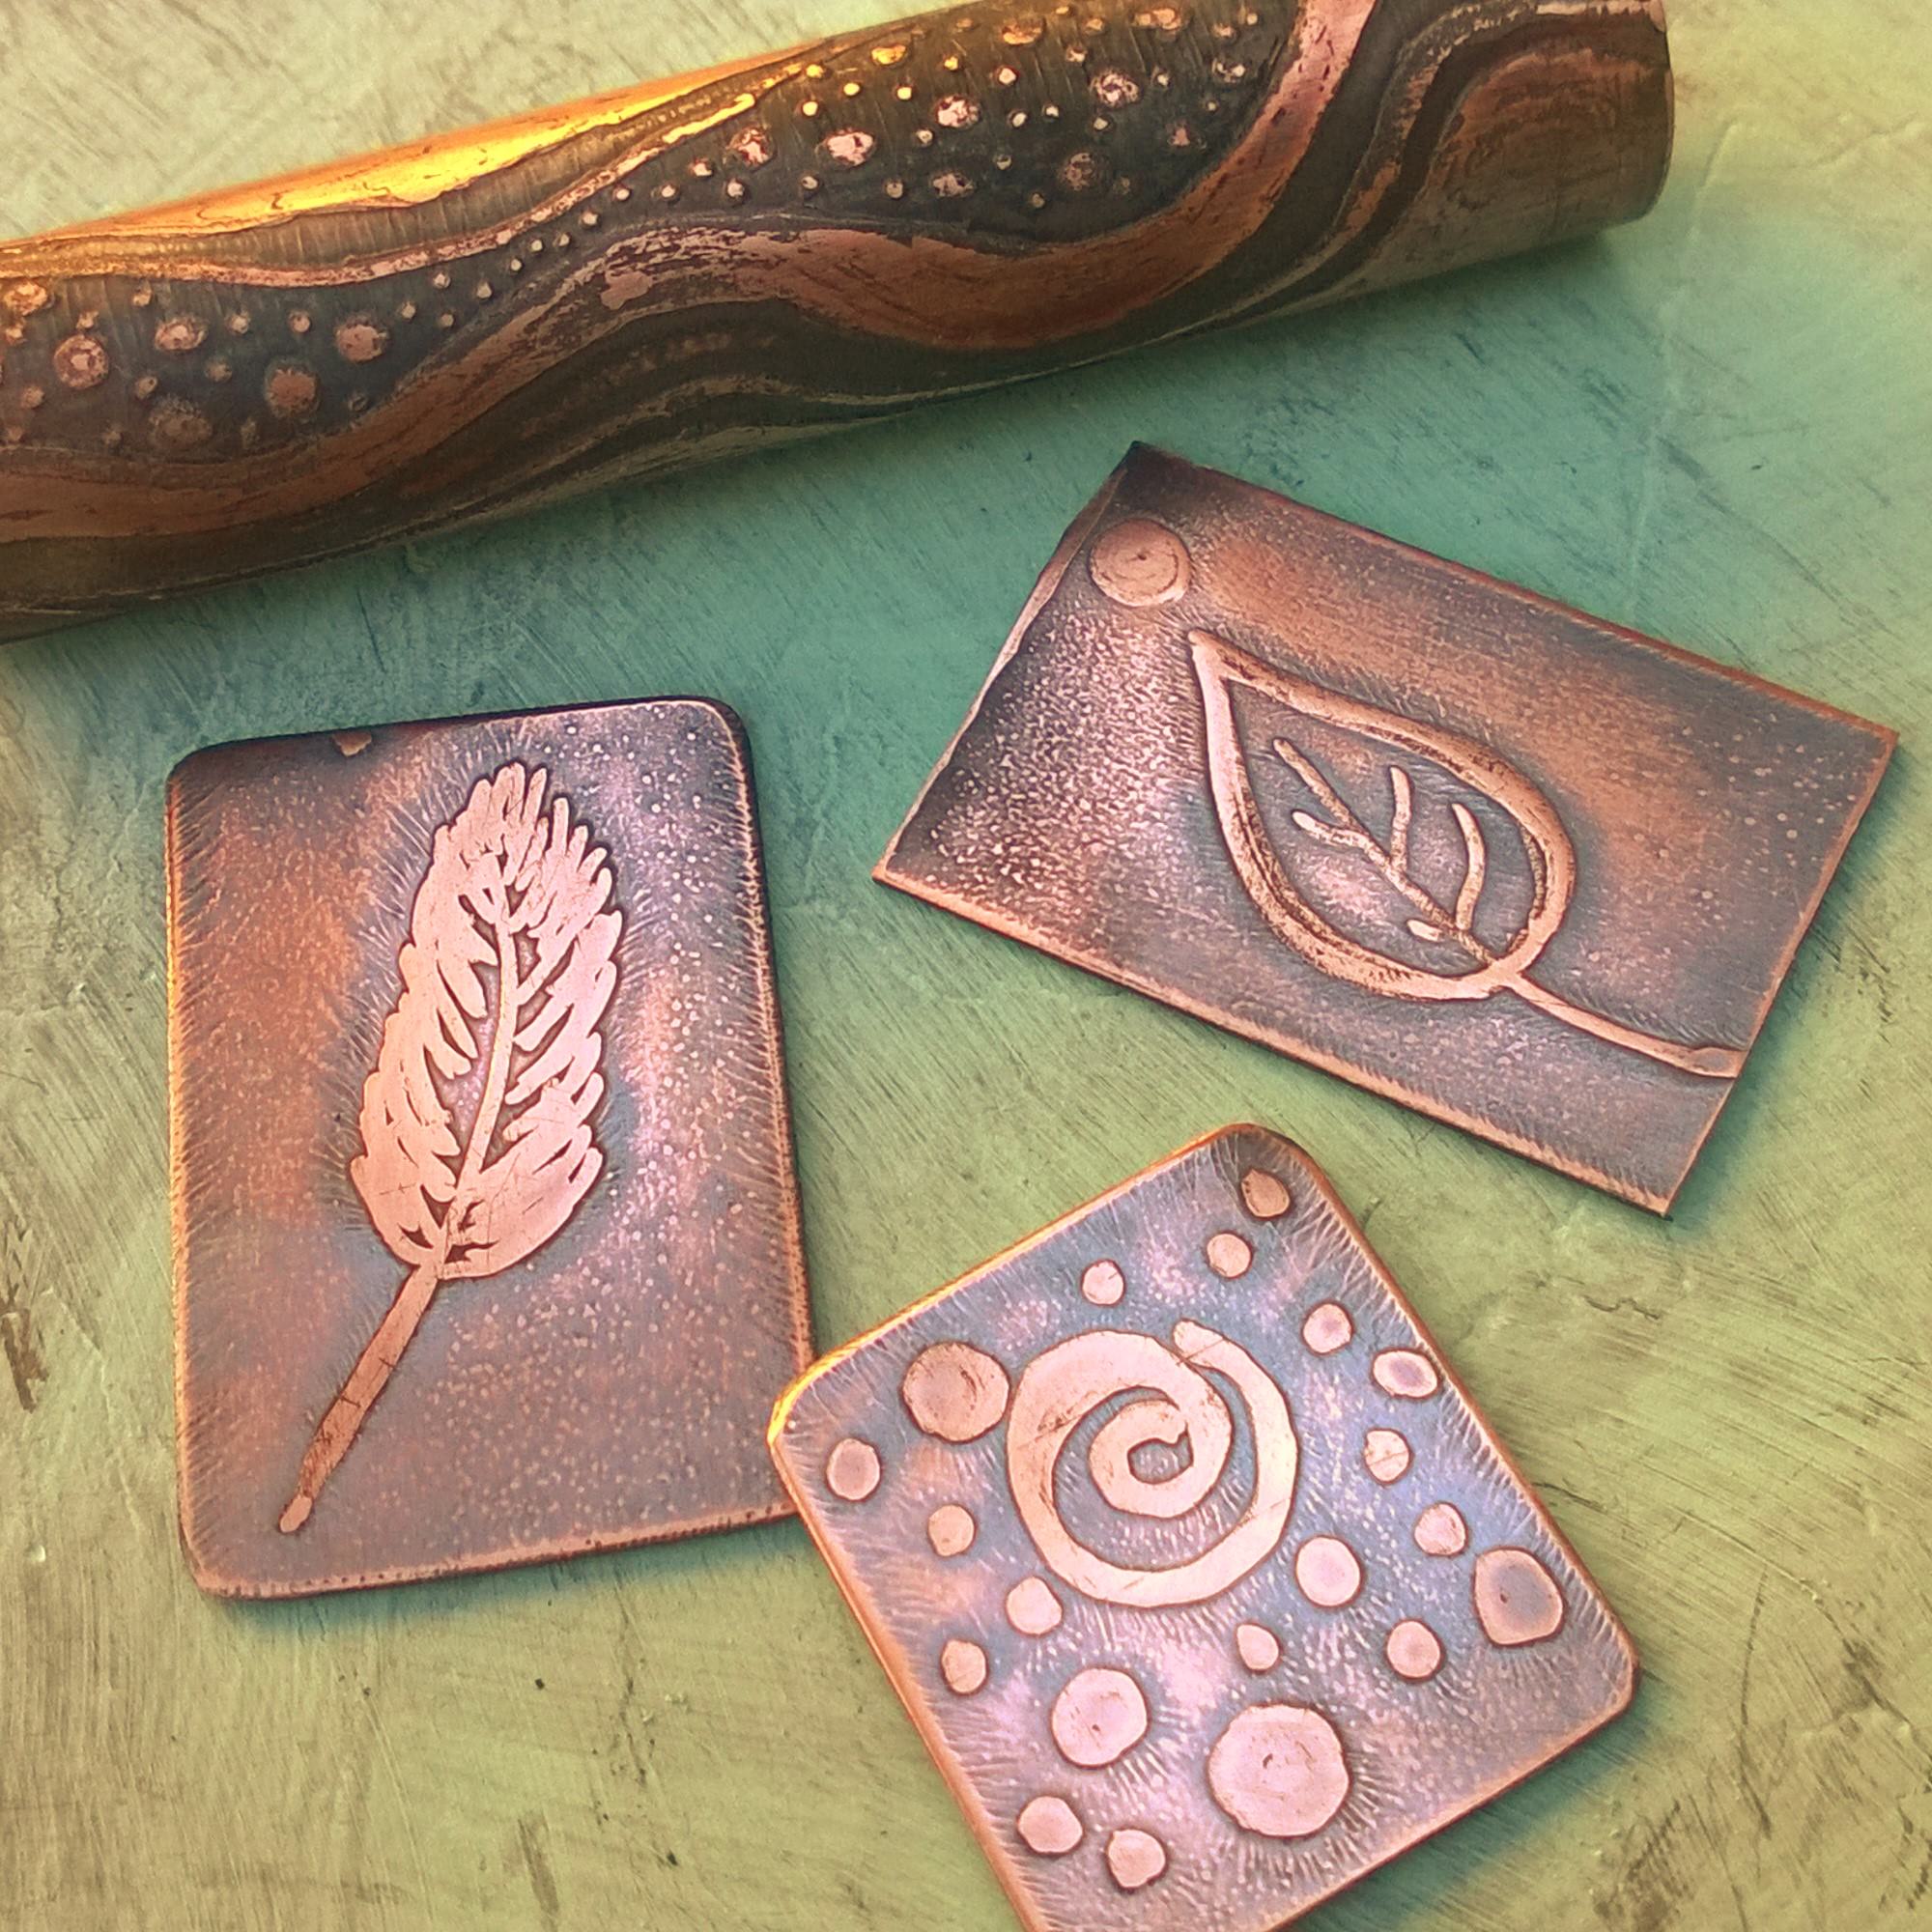 SOLDERING: Copper-Silver Pendant - PKlein Jewelry Design